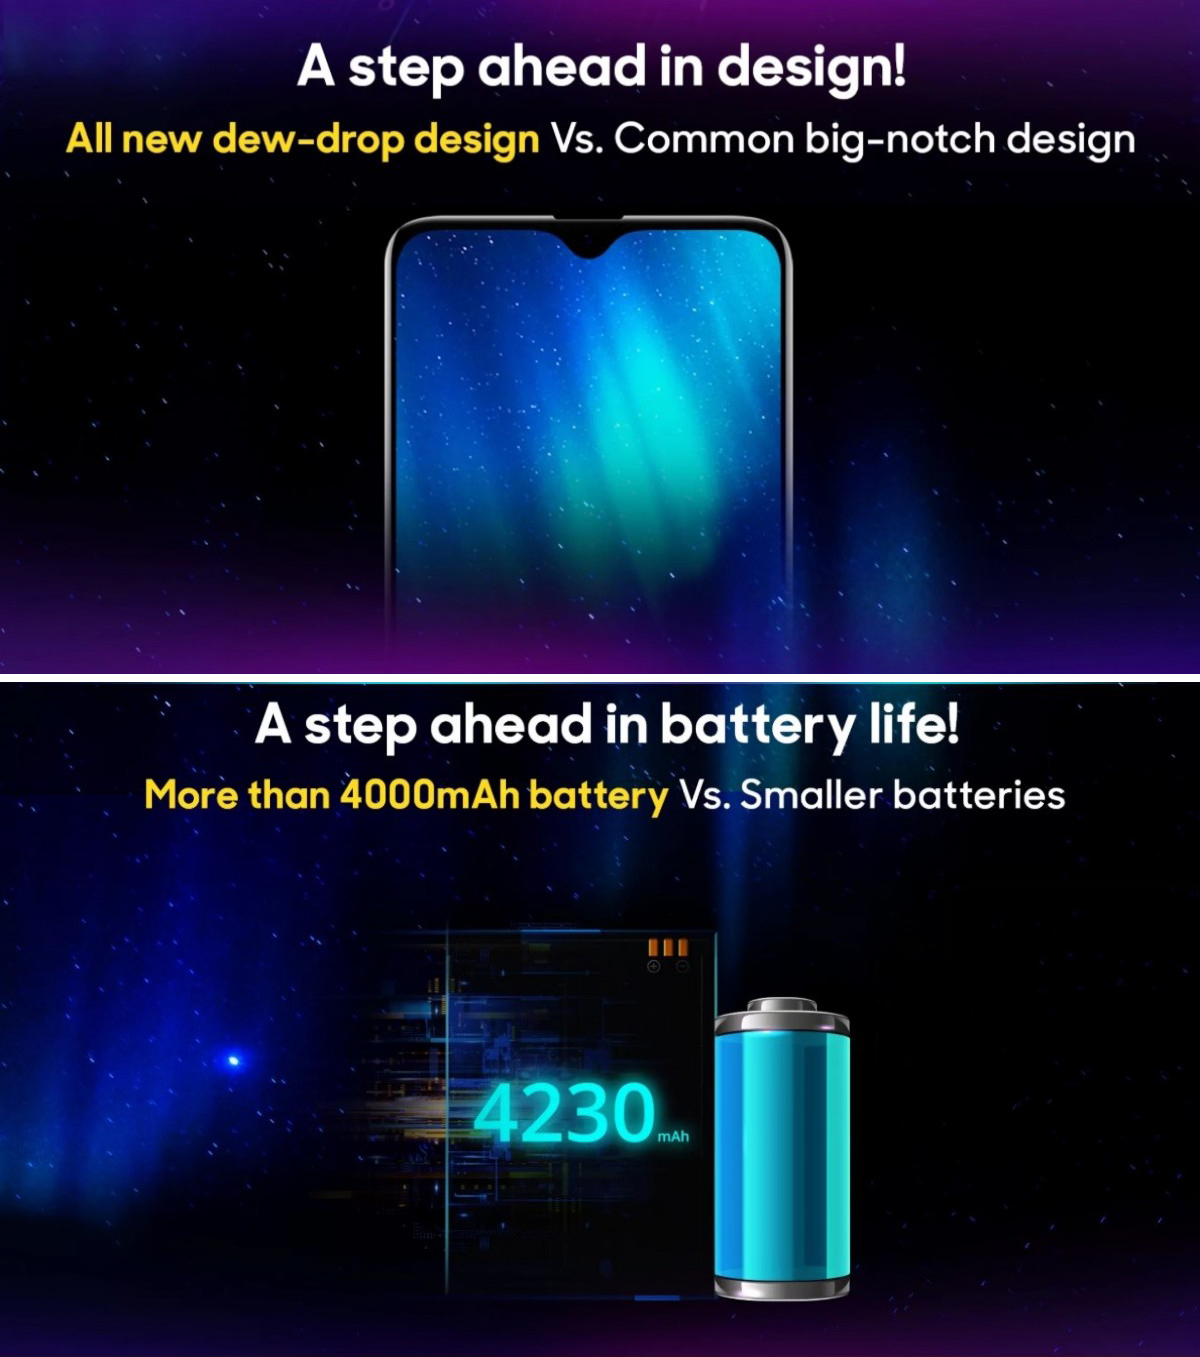 RealMe 3 Teased On Flipkart Revealing Battery Capacity